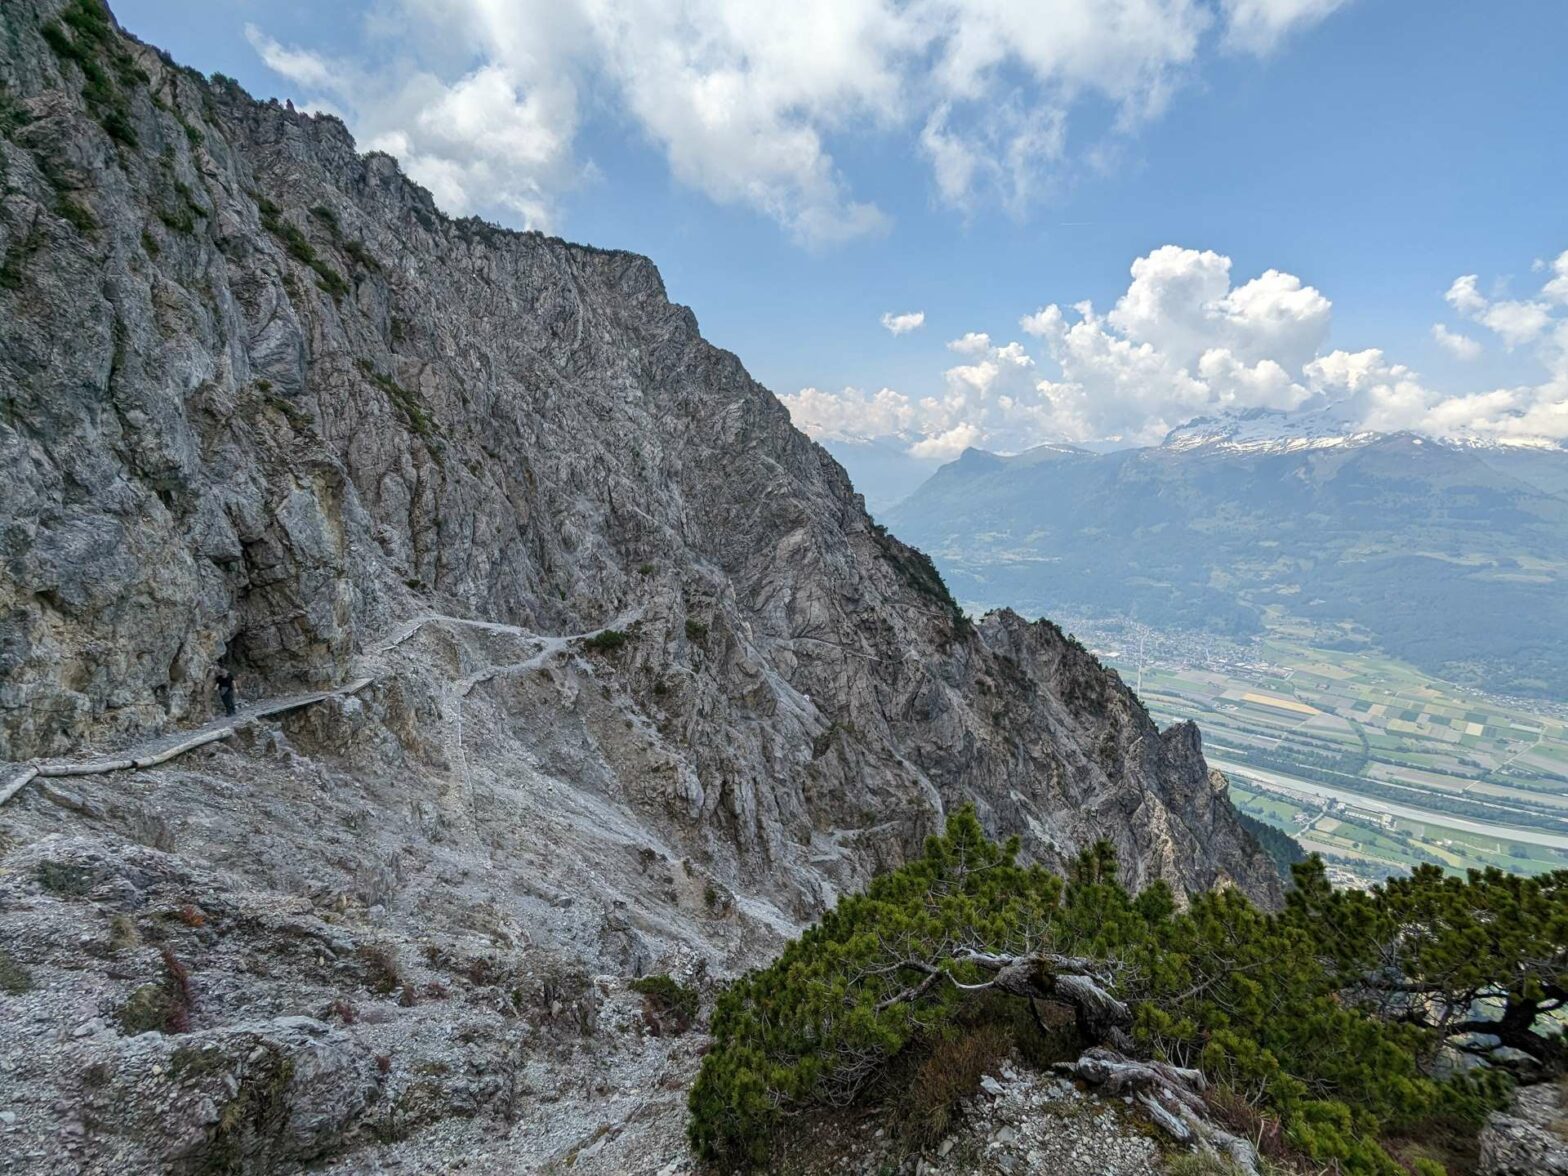 Hiking along the Fürstensteig in Liechtenstein